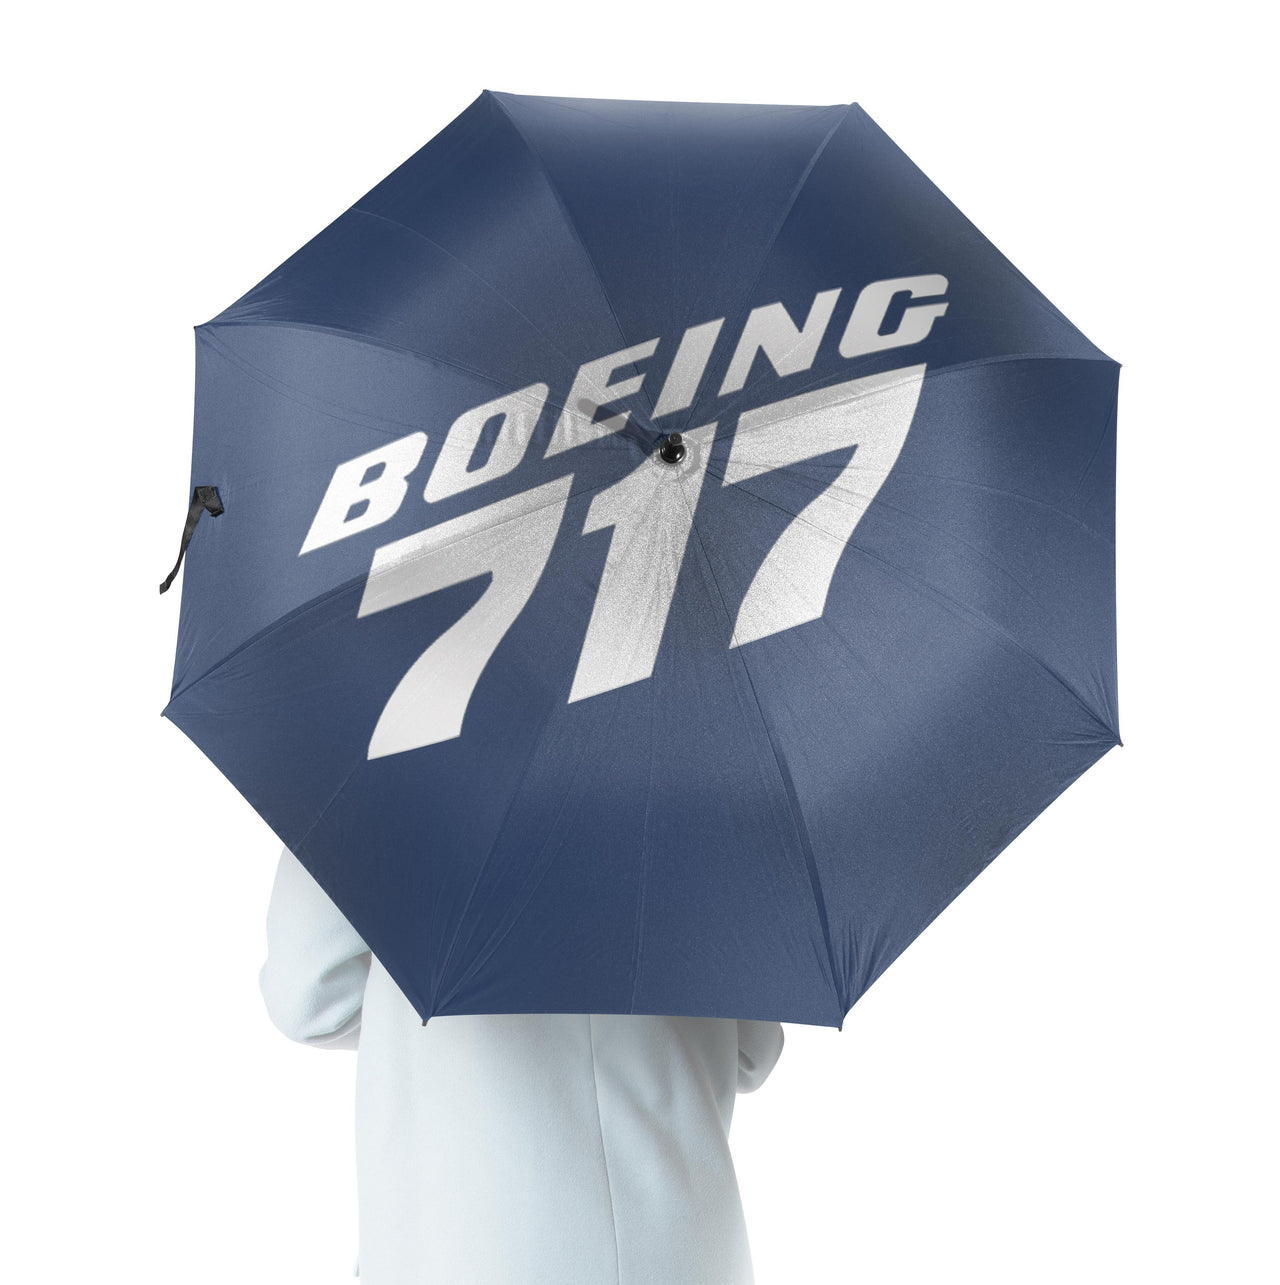 Boeing 717 & Text Designed Umbrella